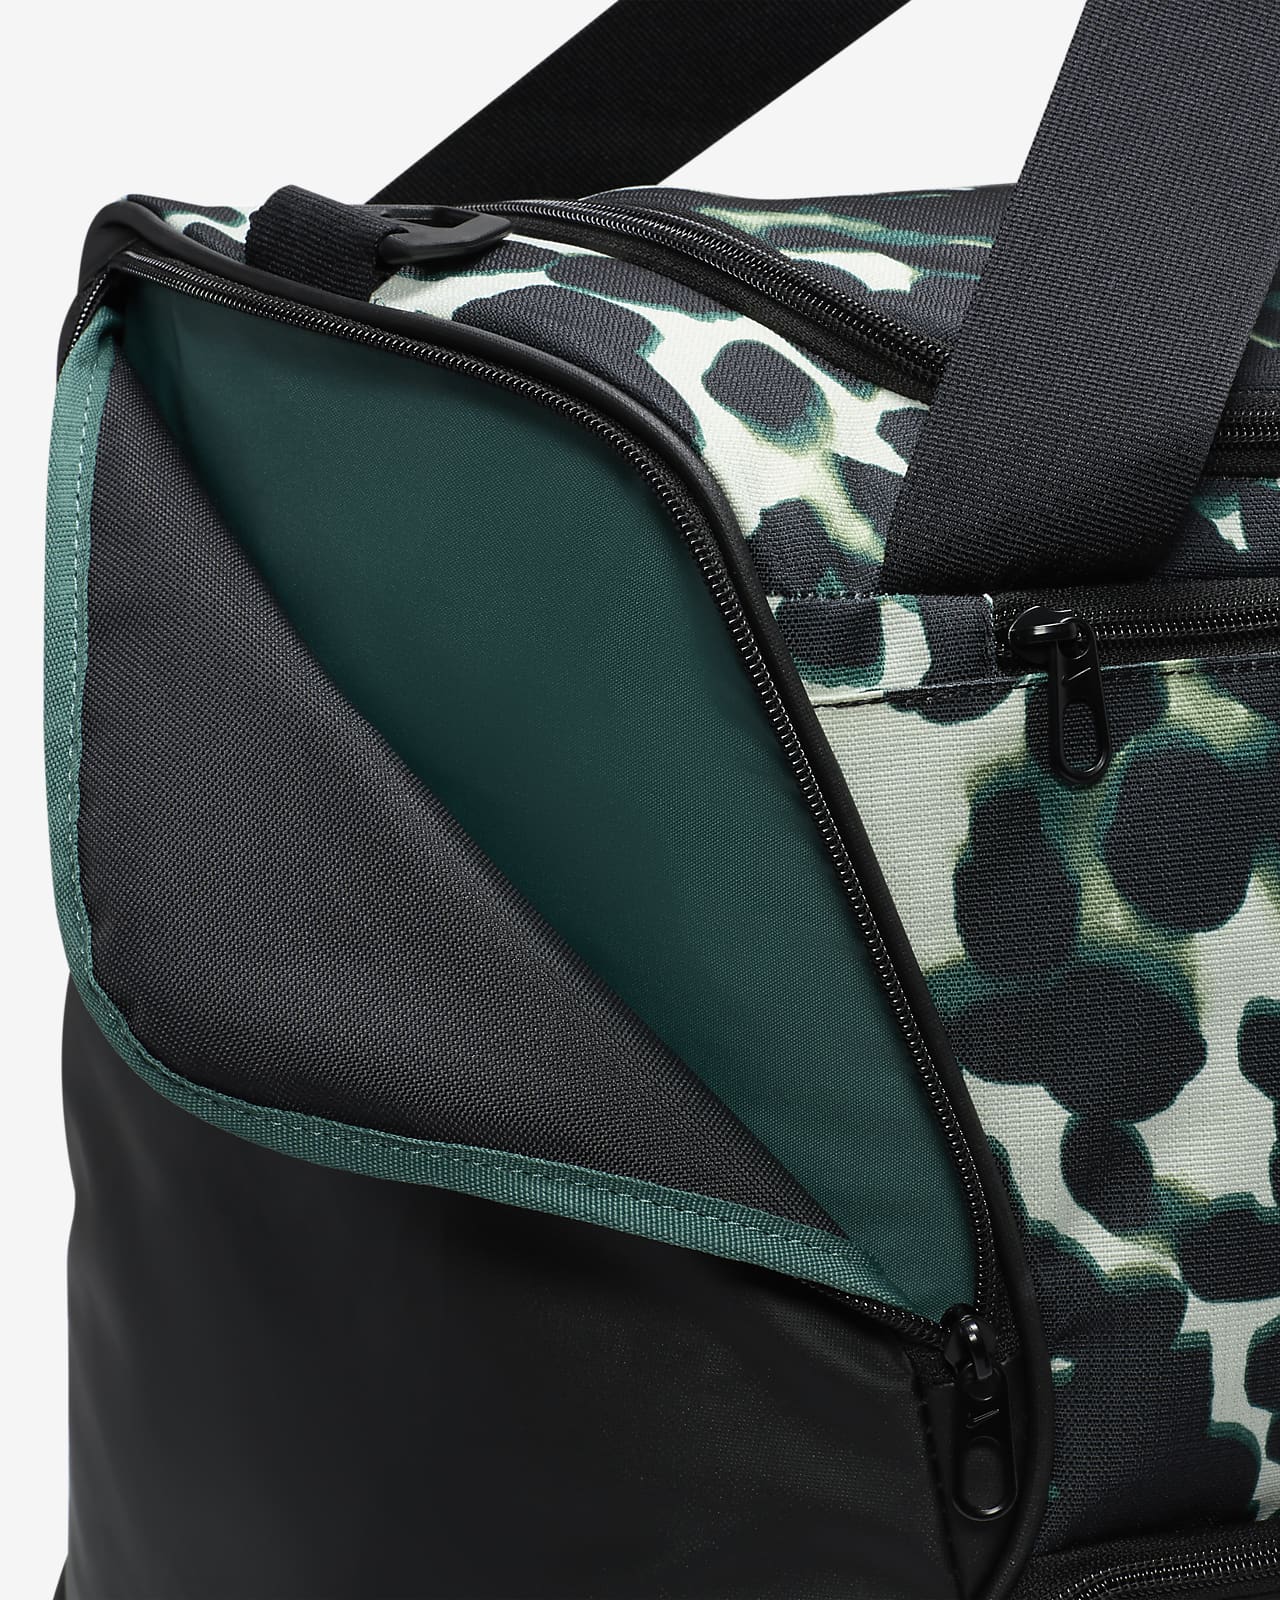  Unisex Nike Brasilia 6 (Medium) Training Duffel Bag : Clothing,  Shoes & Jewelry